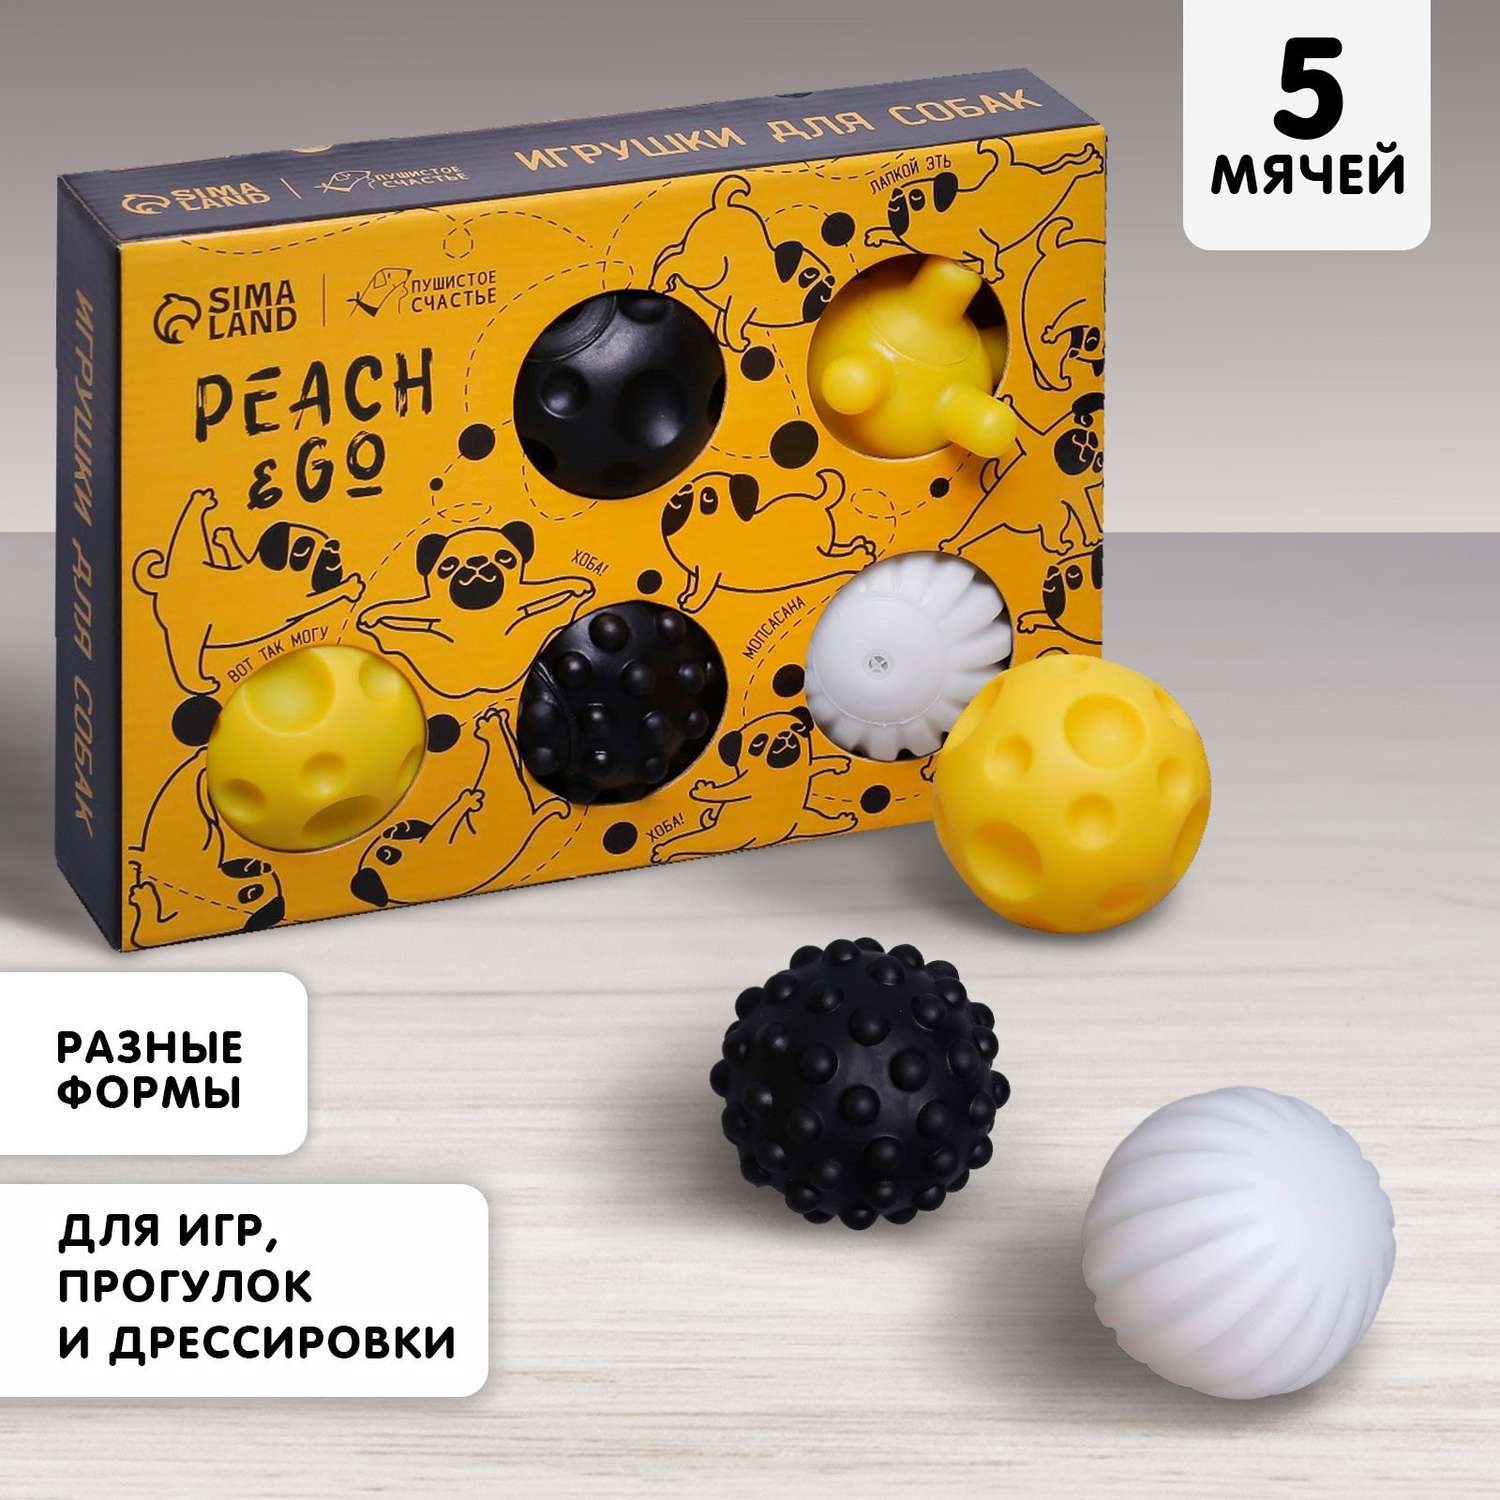 Набор мячей Пушистое счастье для собак Peach and go 5 шт. - фото 1